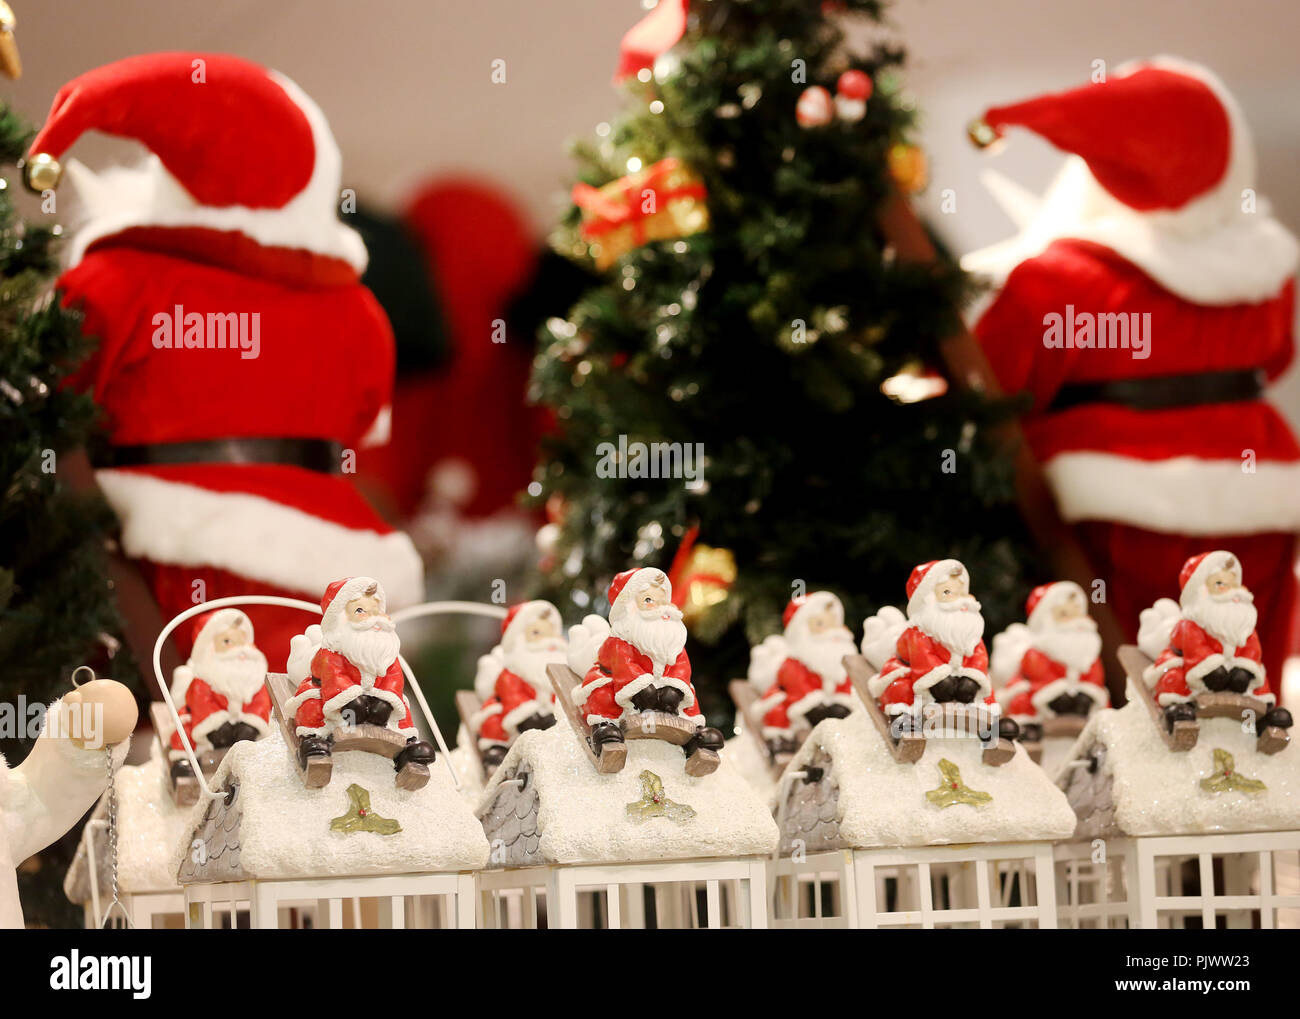 Essen, Allemagne. 05 Sep, 2018. Lanternes de Noël sont sur une étagère pendant la saison de Noël. Le marché de Noël qui comprend près d'un millier de mètres carrés est prévue pour le 13 septembre 2018. Credit : Roland Weihrauch/dpa/Alamy Live News Banque D'Images